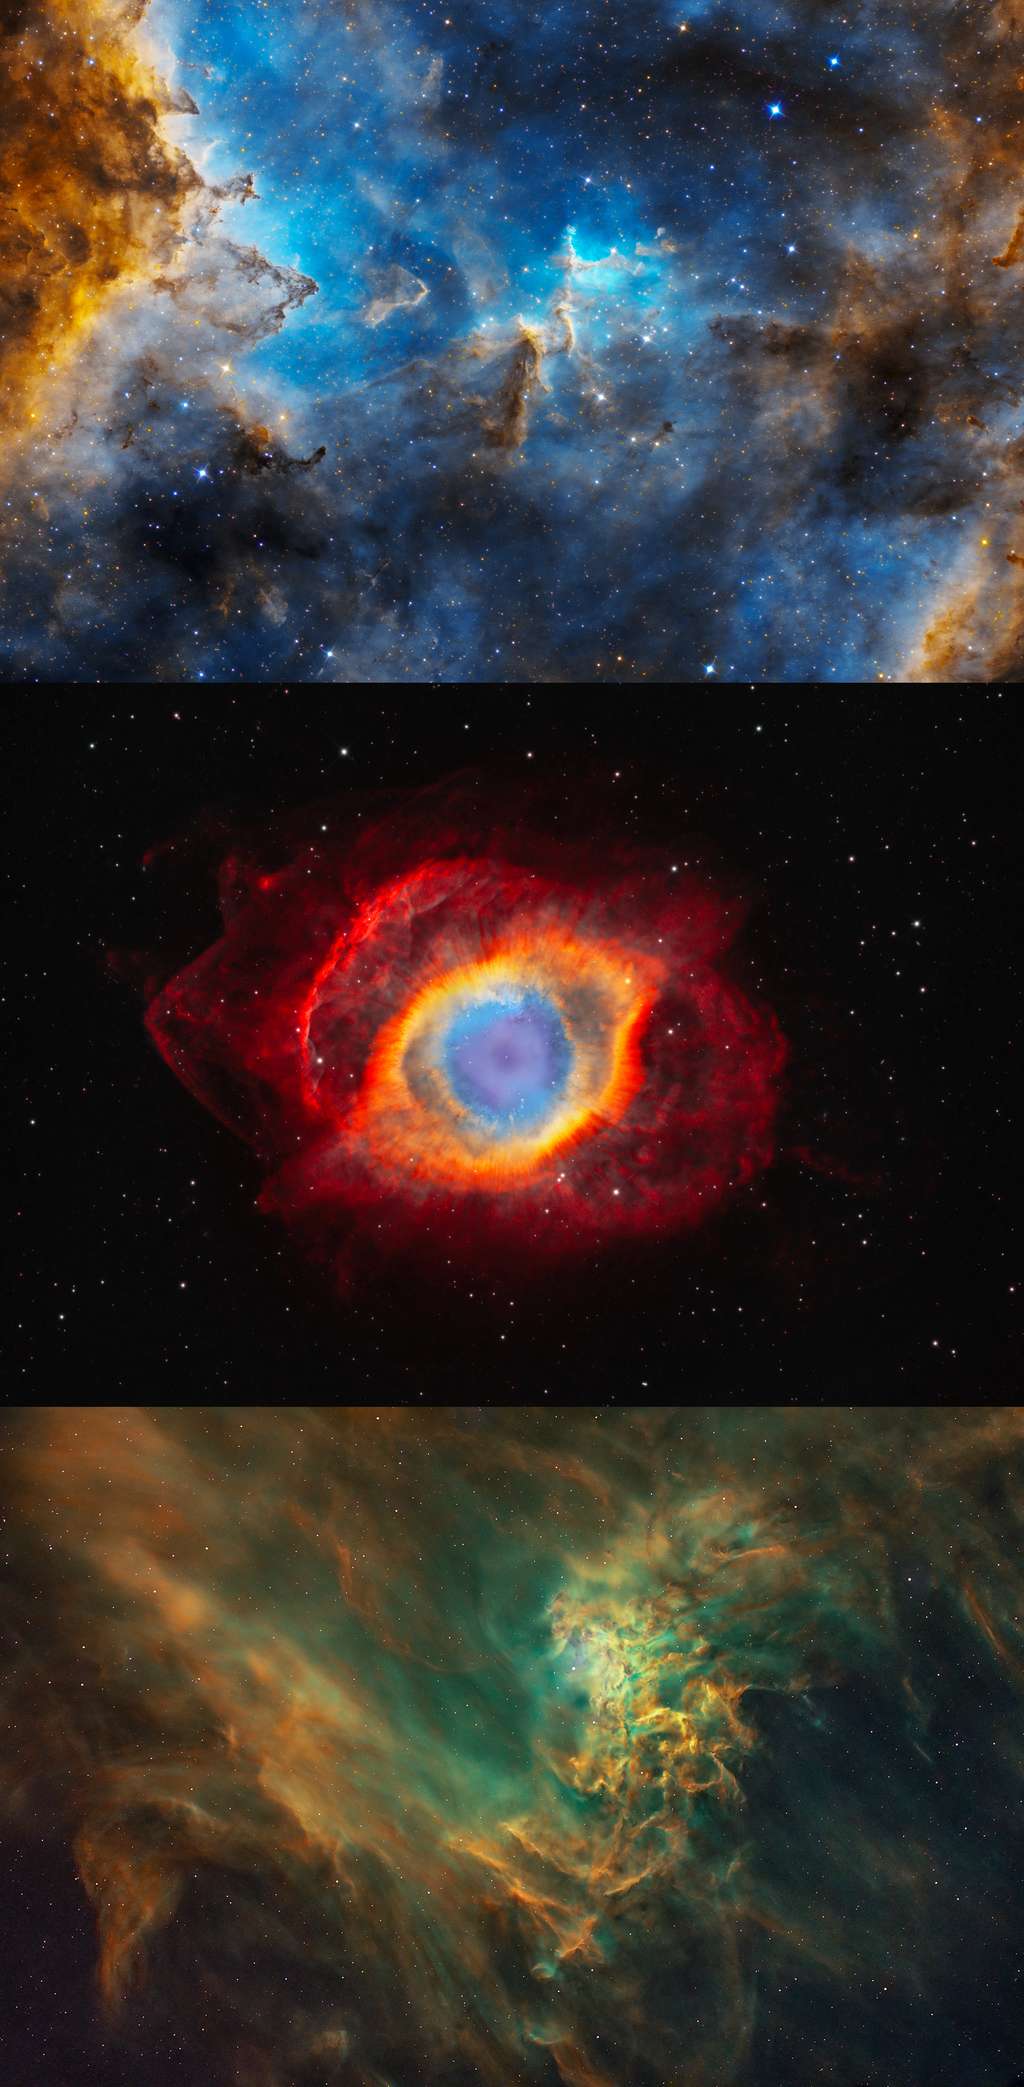 Ces trois images ont été primées dans la catégorie « étoiles et nébuleuses ». L’image du haut montre la nébuleuse du Cœur, (IC 1805) où l’on trouve de grandes quantités de gaz ionisé et de poussière interstellaire. Le vent stellaire des étoiles chaudes en formation souffle le matériau environnant vers l'extérieur, créant une forme creuse semblable à une grotte dans le nuage de gaz parent. © Péter Feltóti<br>L’image du milieu montre la nébuleuse de l'Hélice ou NGC 7293 et ses couleurs flamboyantes du noyau et des détails environnants rarement vus. © Weitang Liang<br>L’image du bas montre la nébuleuse de l'Étoile flamboyante (IC 405, SH 2-229 ou Caldwell 31), une nébuleuse d'émission et de réflexion située dans la constellation d'Auriga. Elle se trouve à environ 1.500 années-lumière de la Terre et mesure environ 5 années-lumière de diamètre. © Martin Cohen